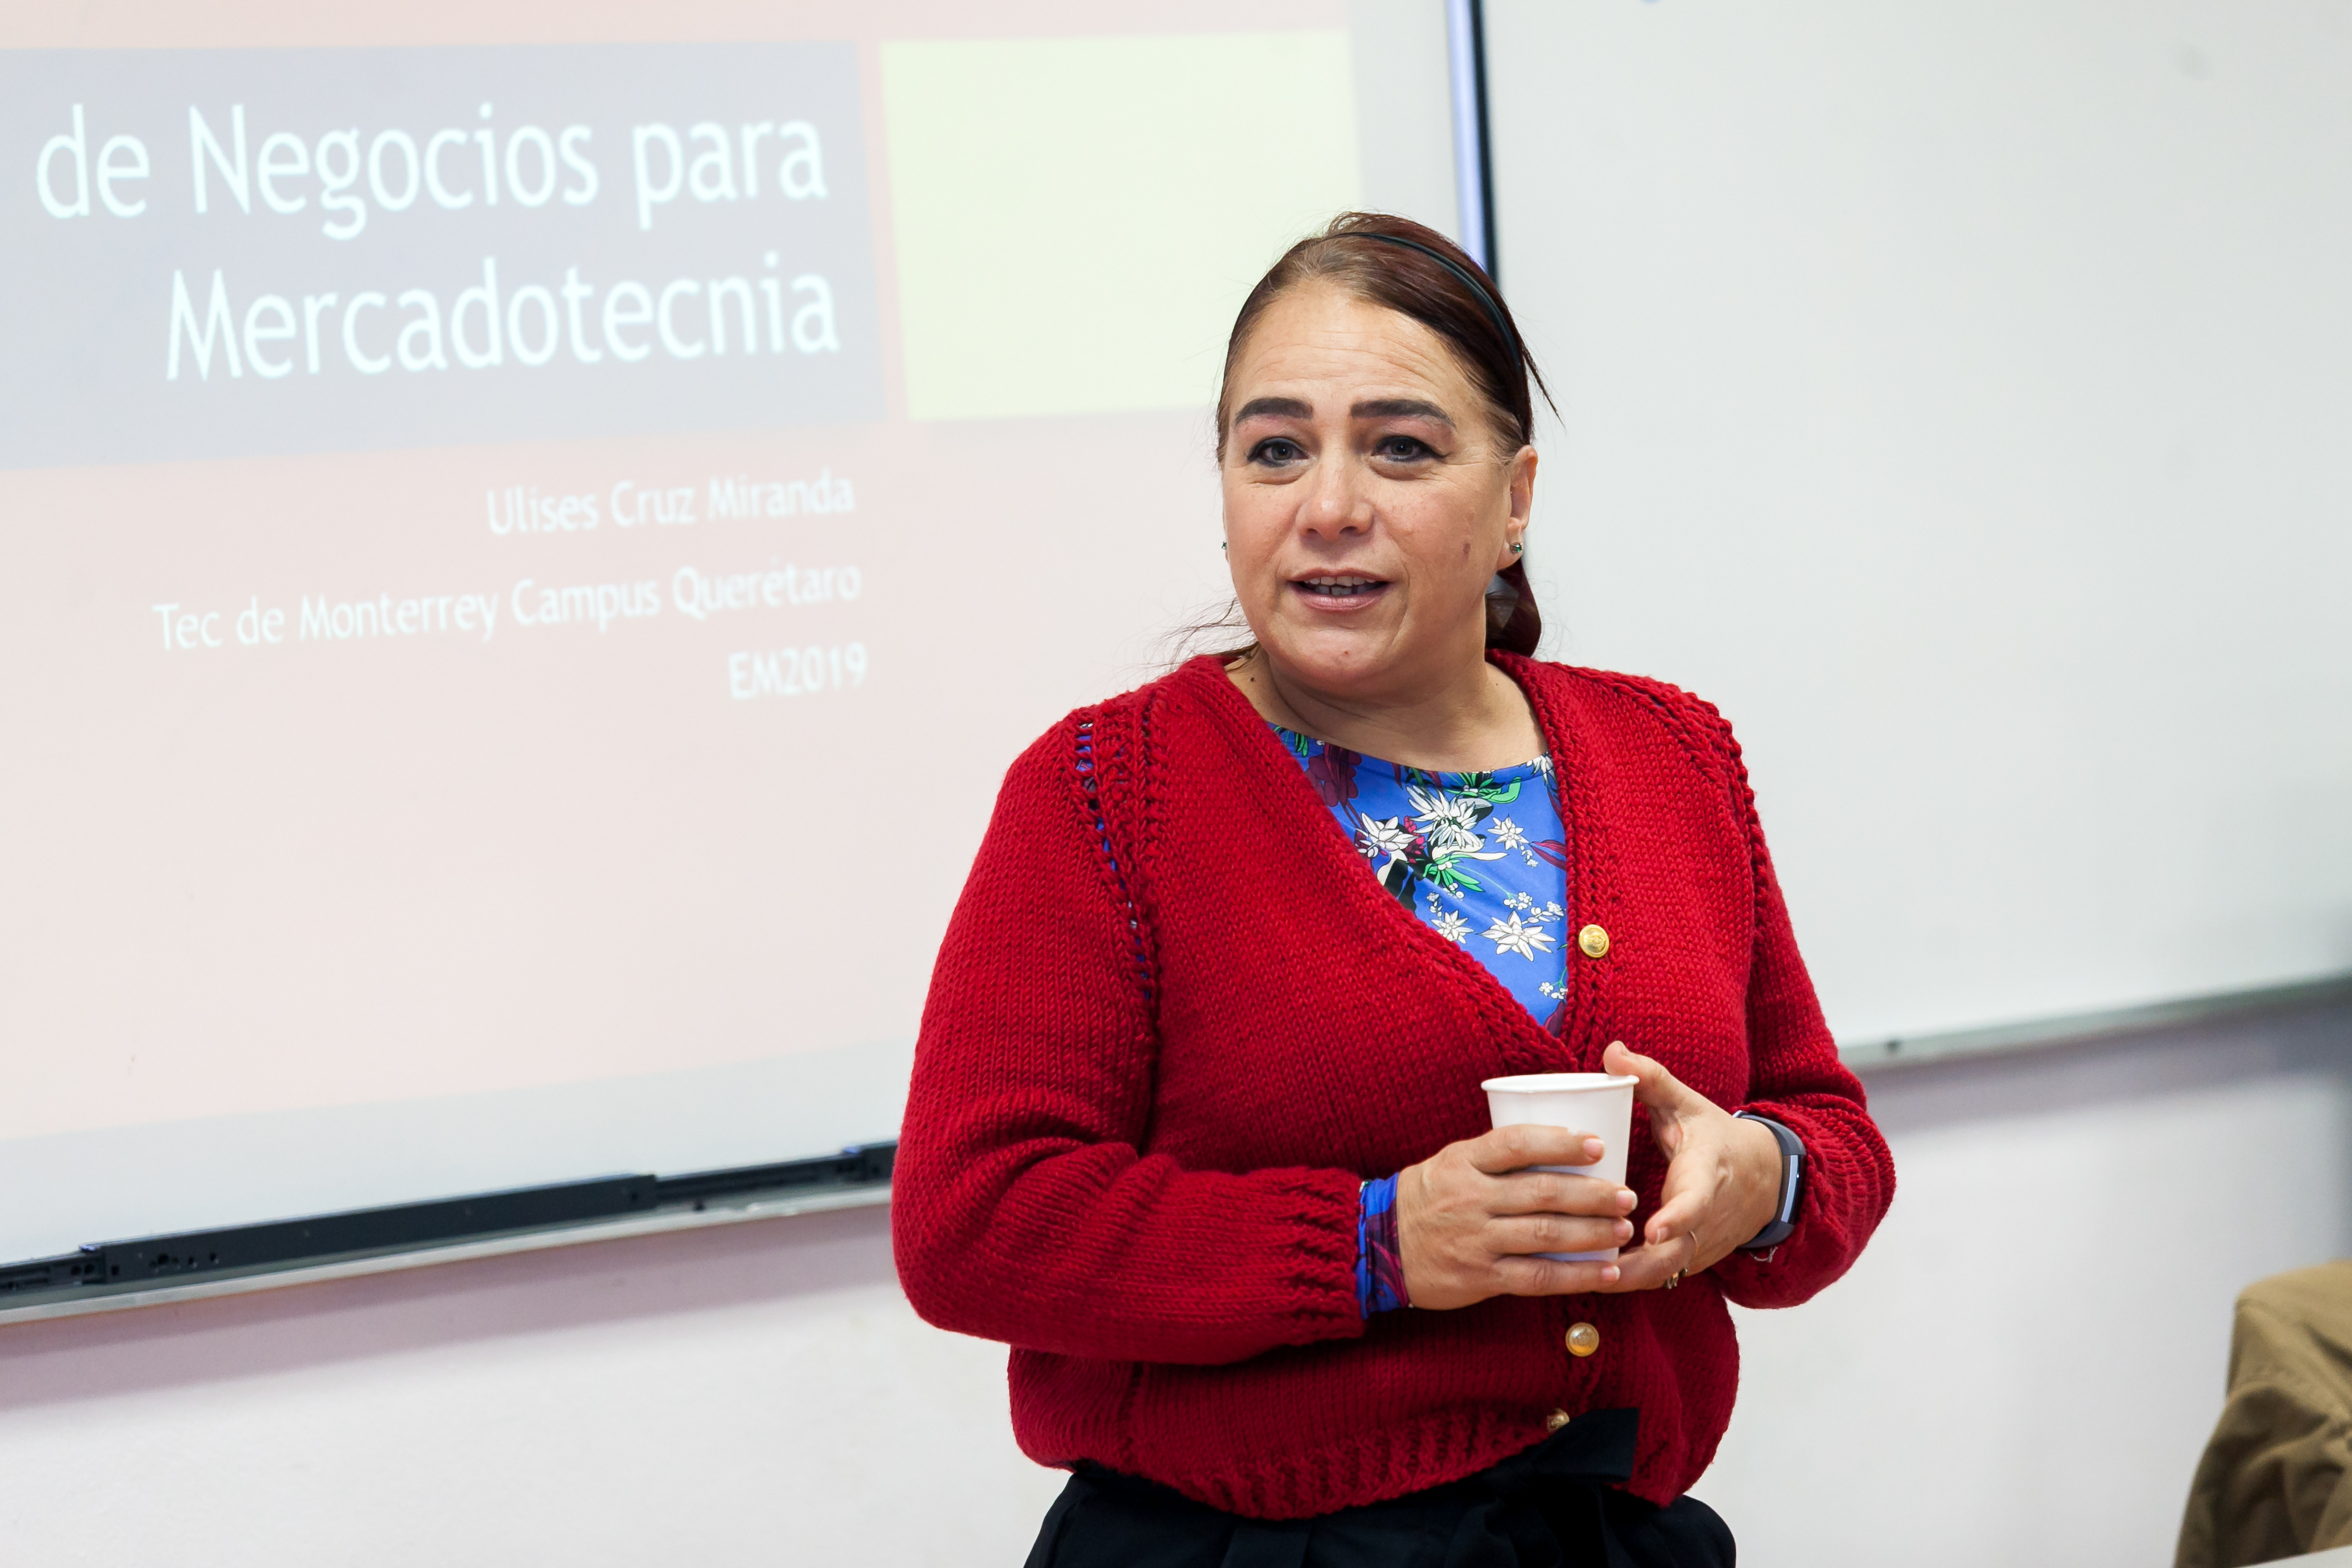 La Dra. Mariana Alfaro Cendejas, Directora Regional del Departamento de Mercadotecnia y Análisis de Datos del Tecnológico de Monterrey campus Querétaro